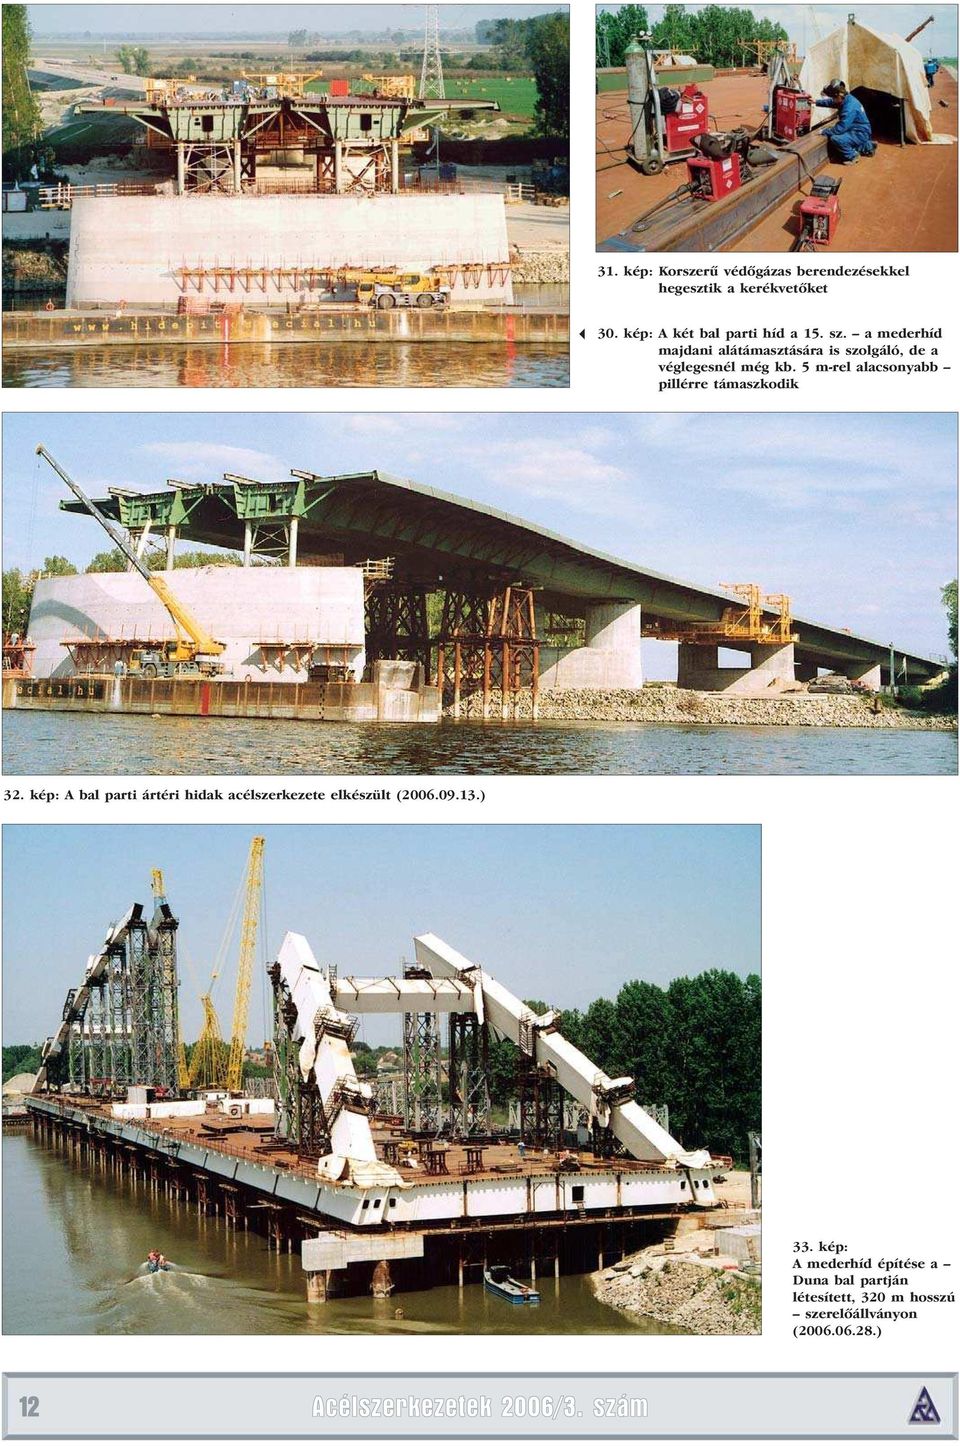 5 m-rel alacsonyabb pillérre támaszkodik 32. kép: A bal parti ártéri hidak acélszerkezete elkészült (2006.